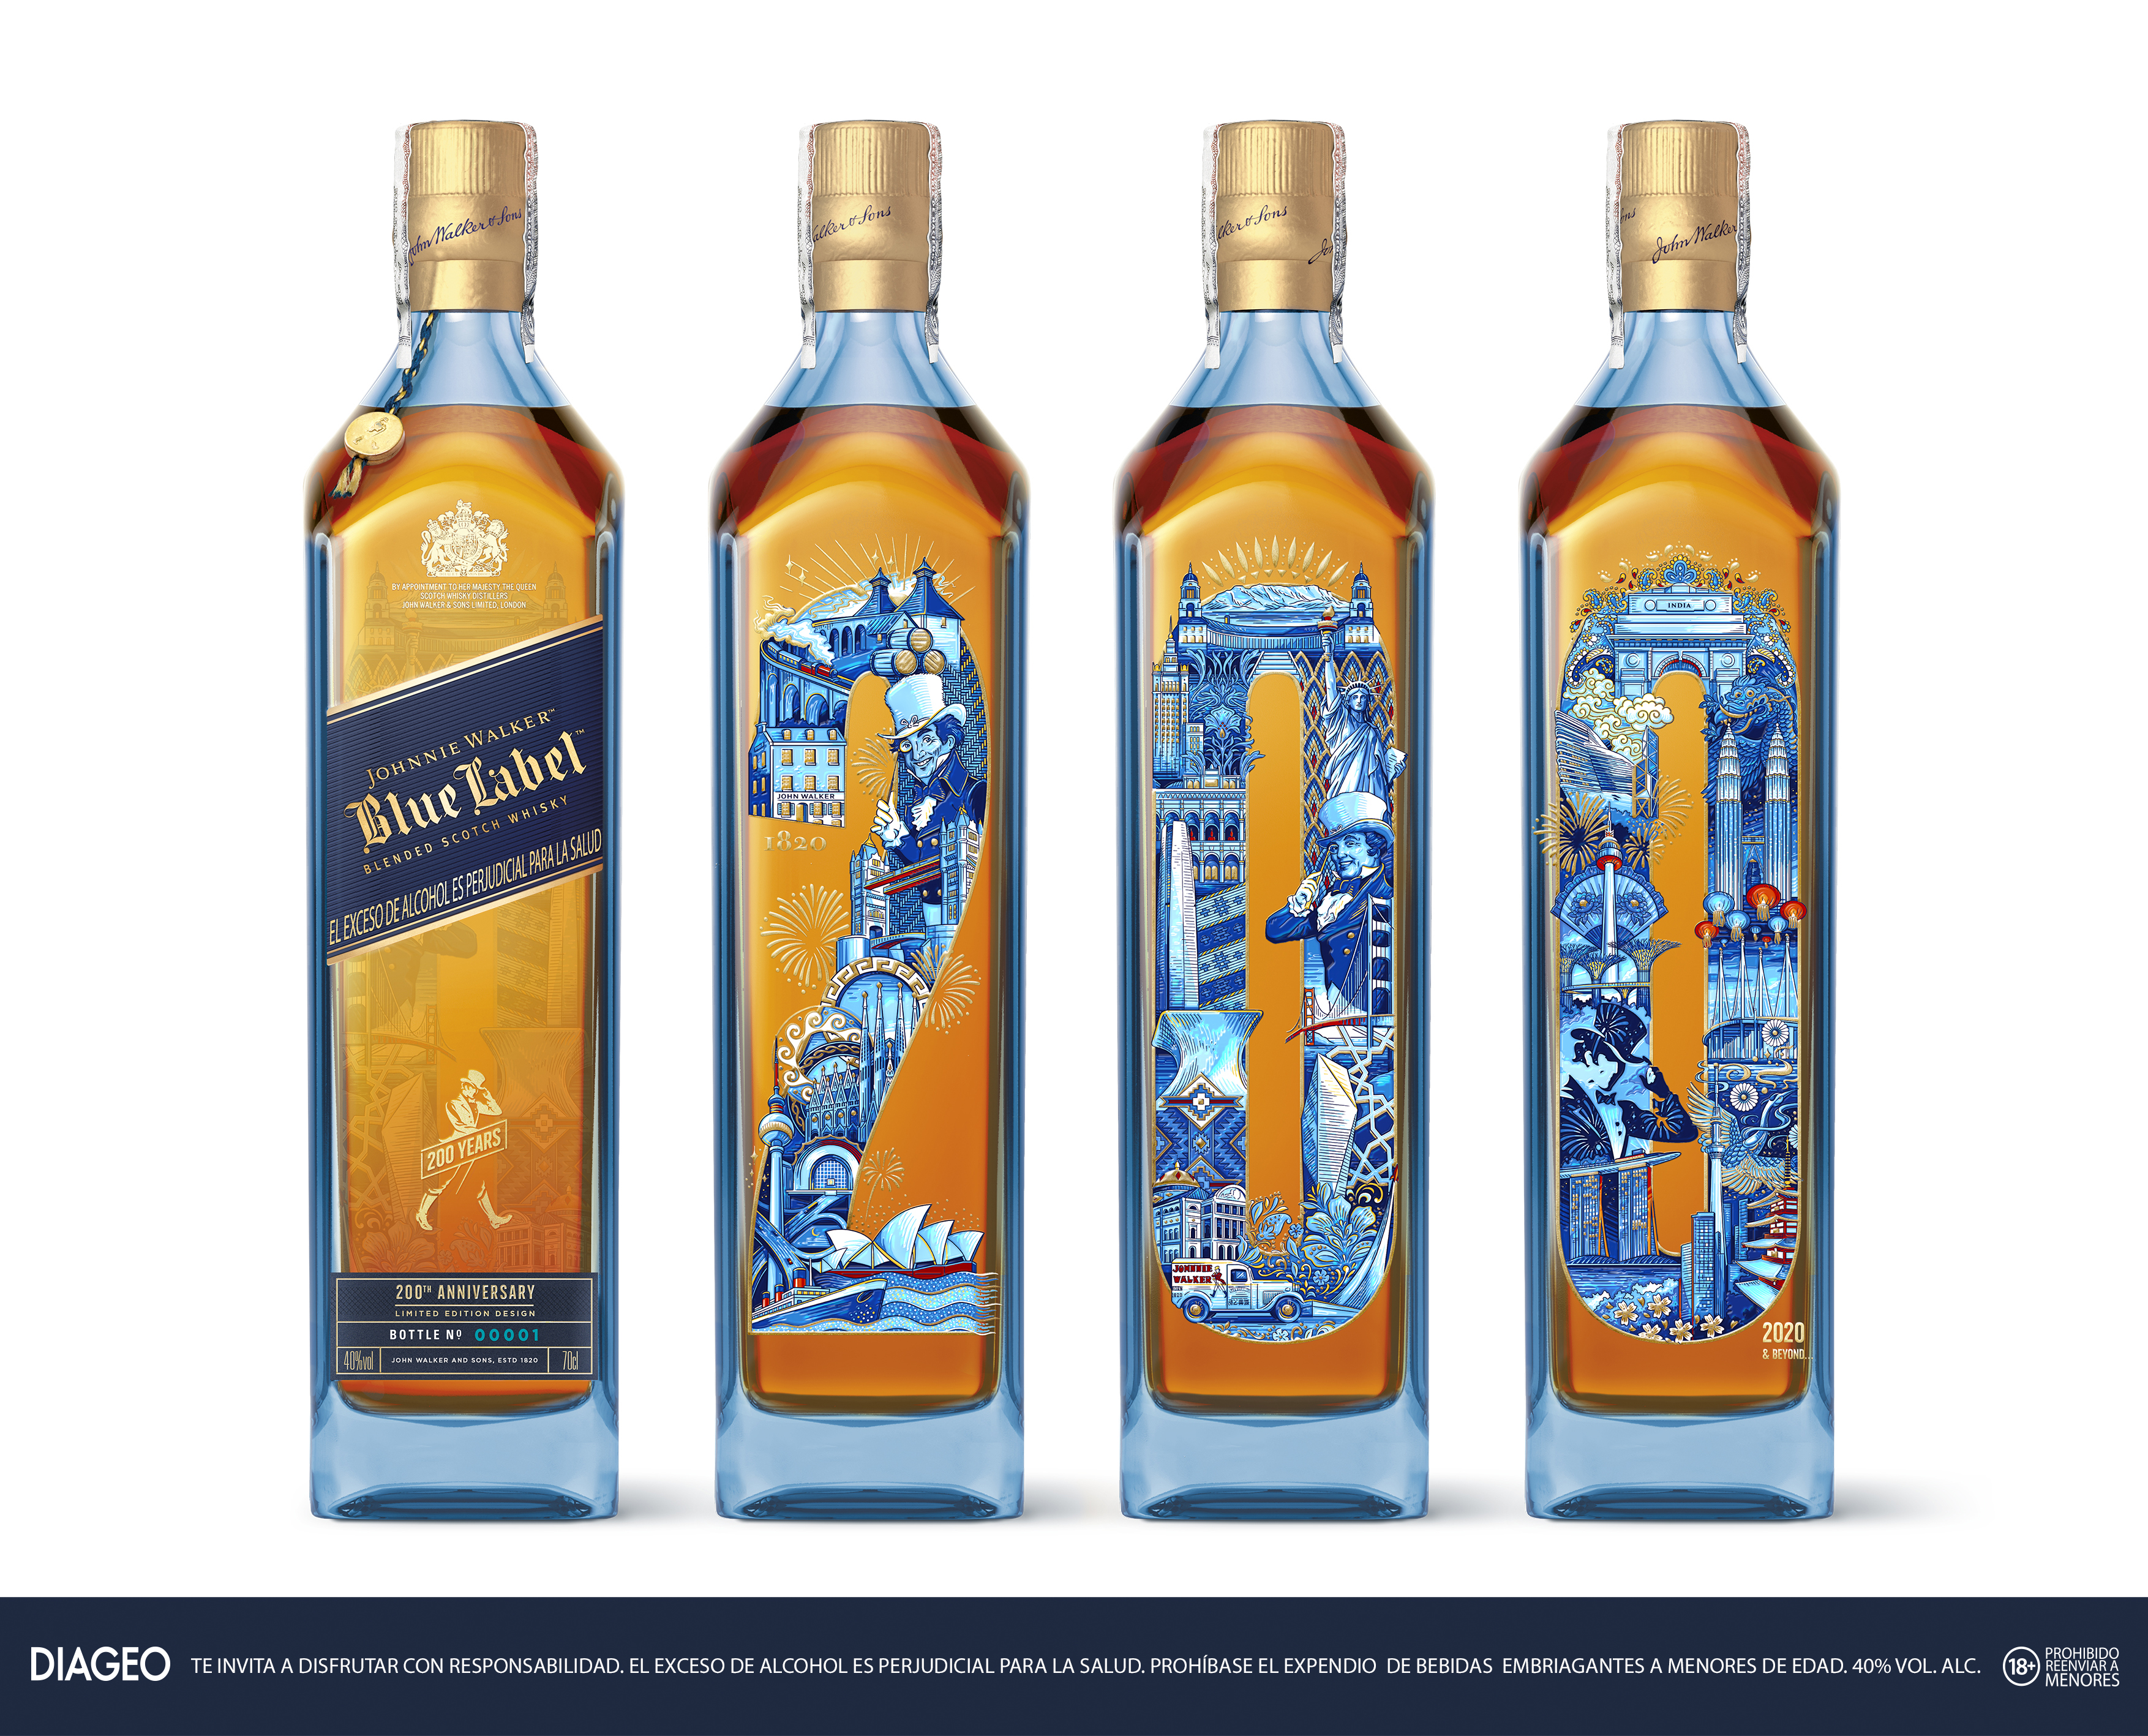 Candle BlueLabel 70cl Bottle LineUp KP Johnnie Walker Blue Label y el whisky de lujo que celebra el diseño